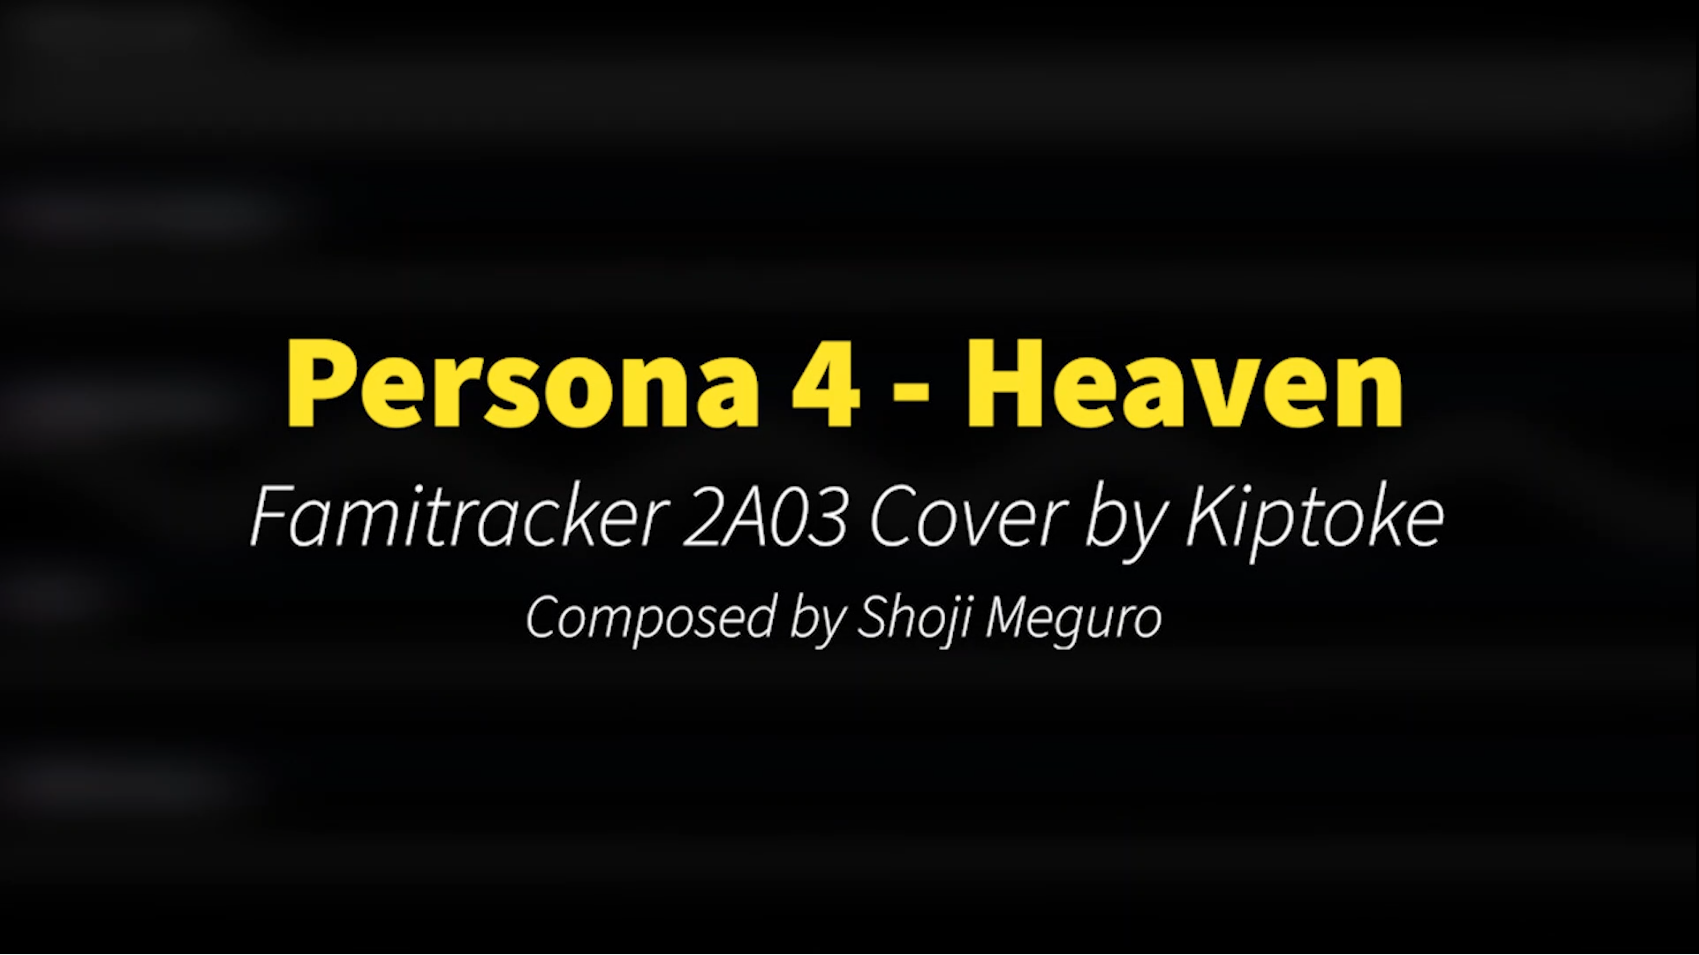 Persona 4 - Heaven